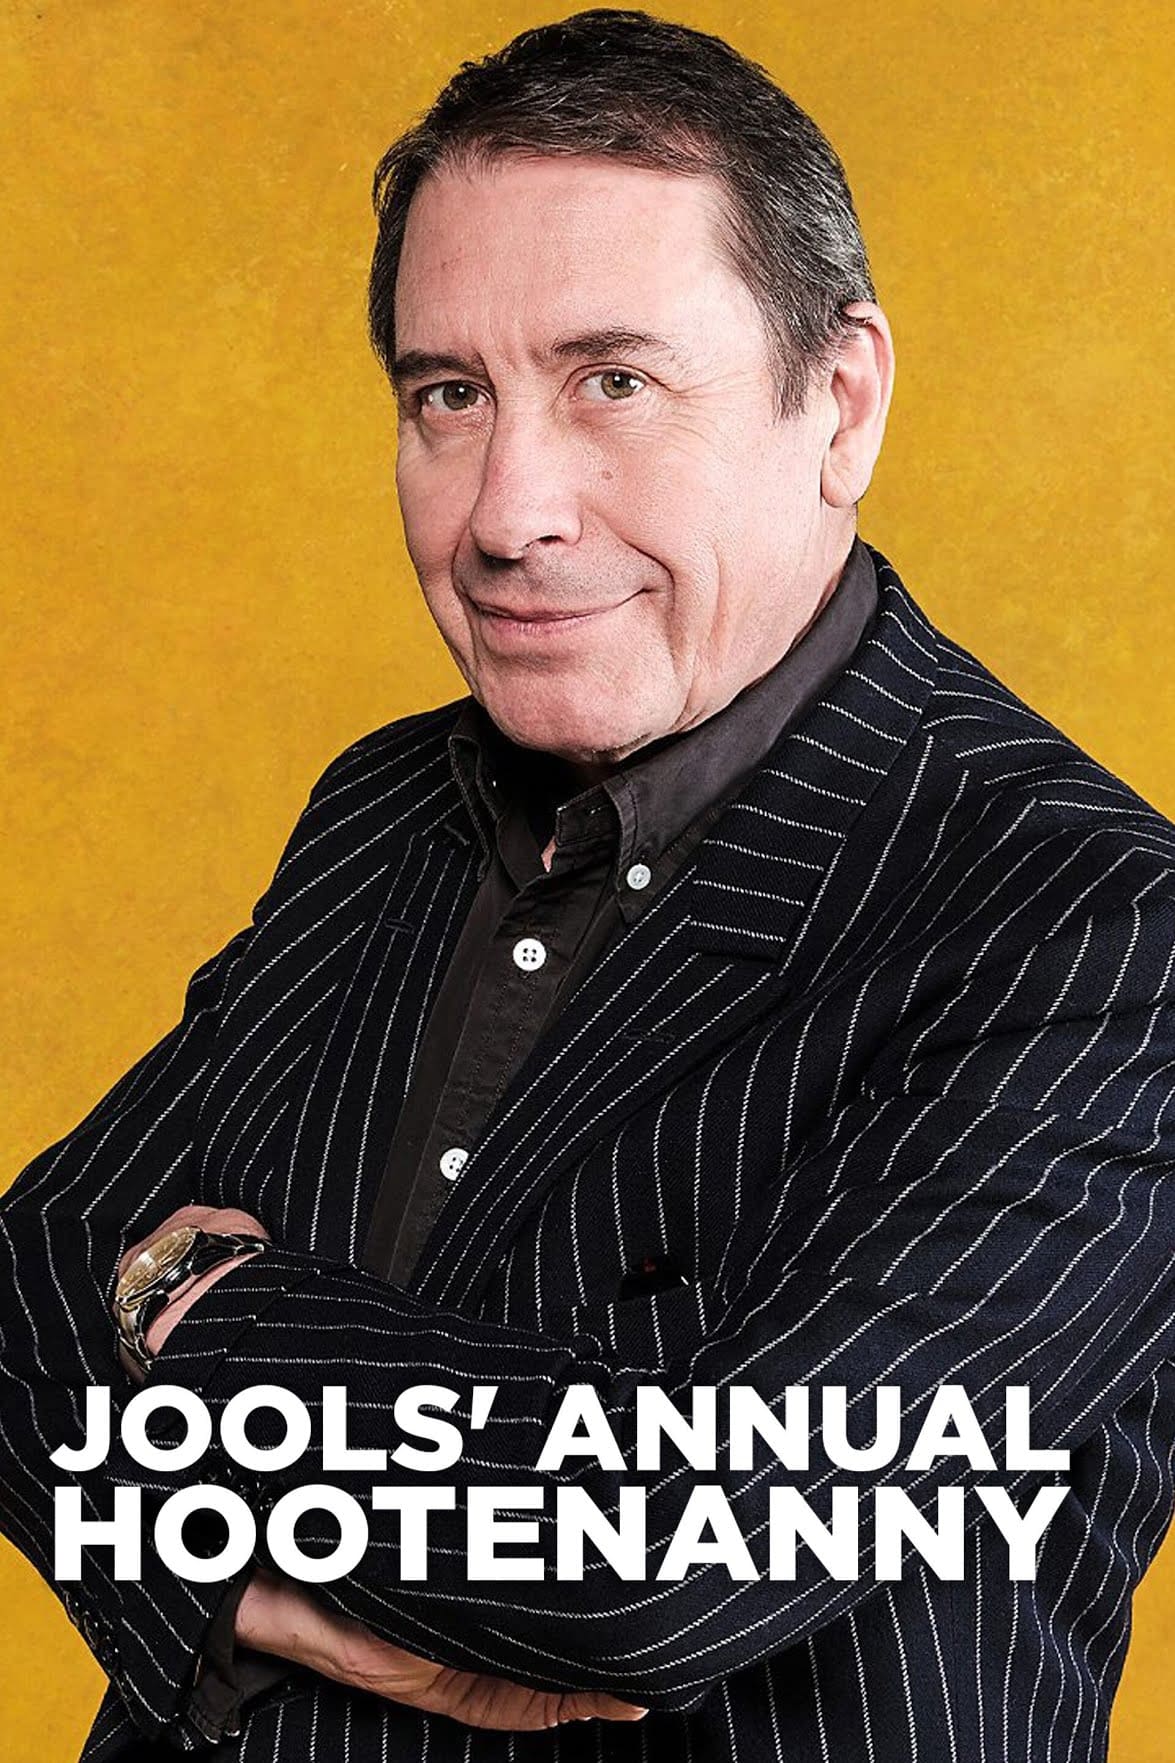 Jools' Annual Hootenanny